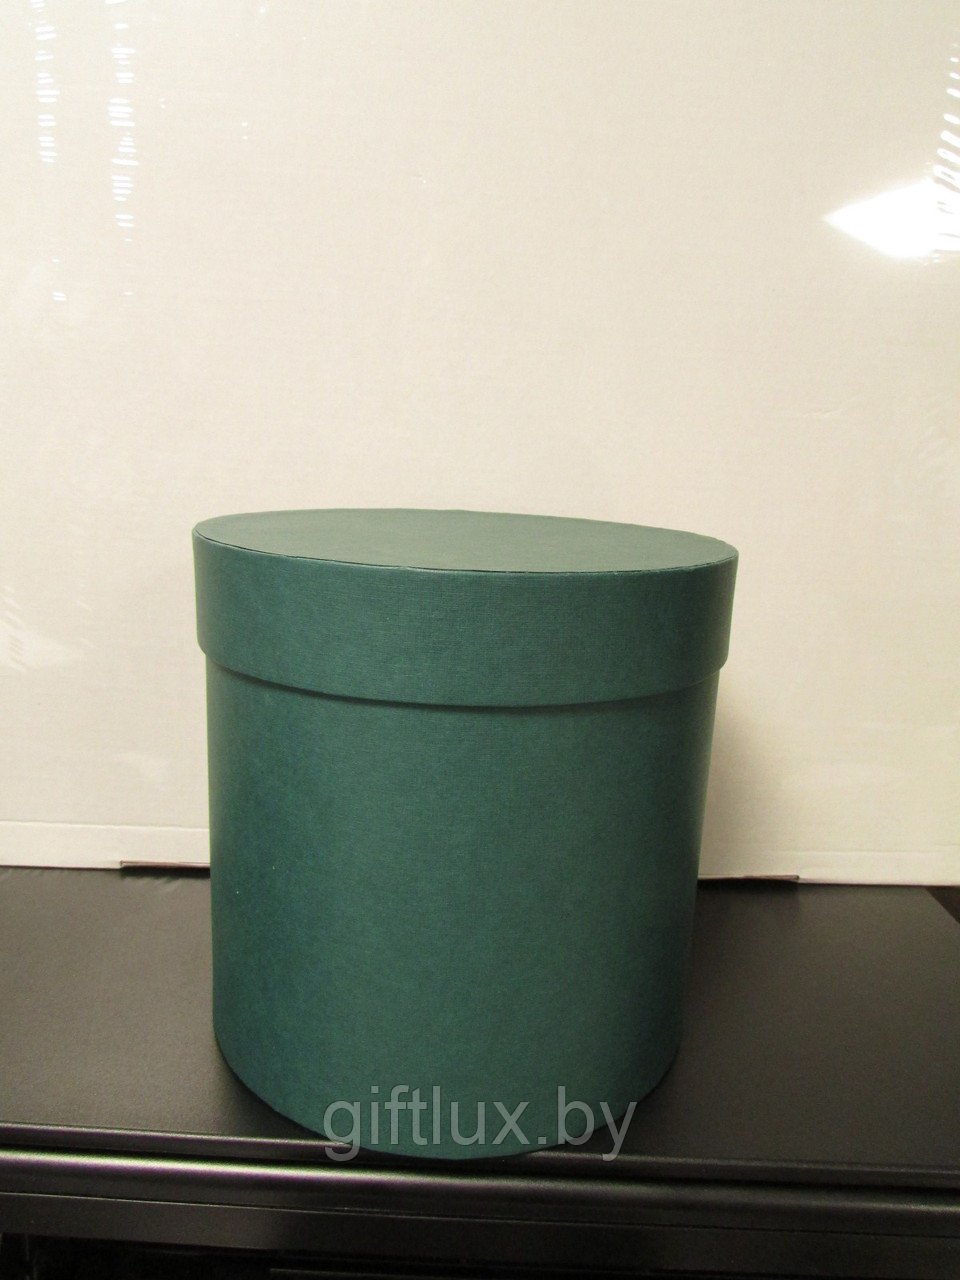 Коробка подарочная круглая "Однотон", 20*20 см (Imitlin) темно-зеленый